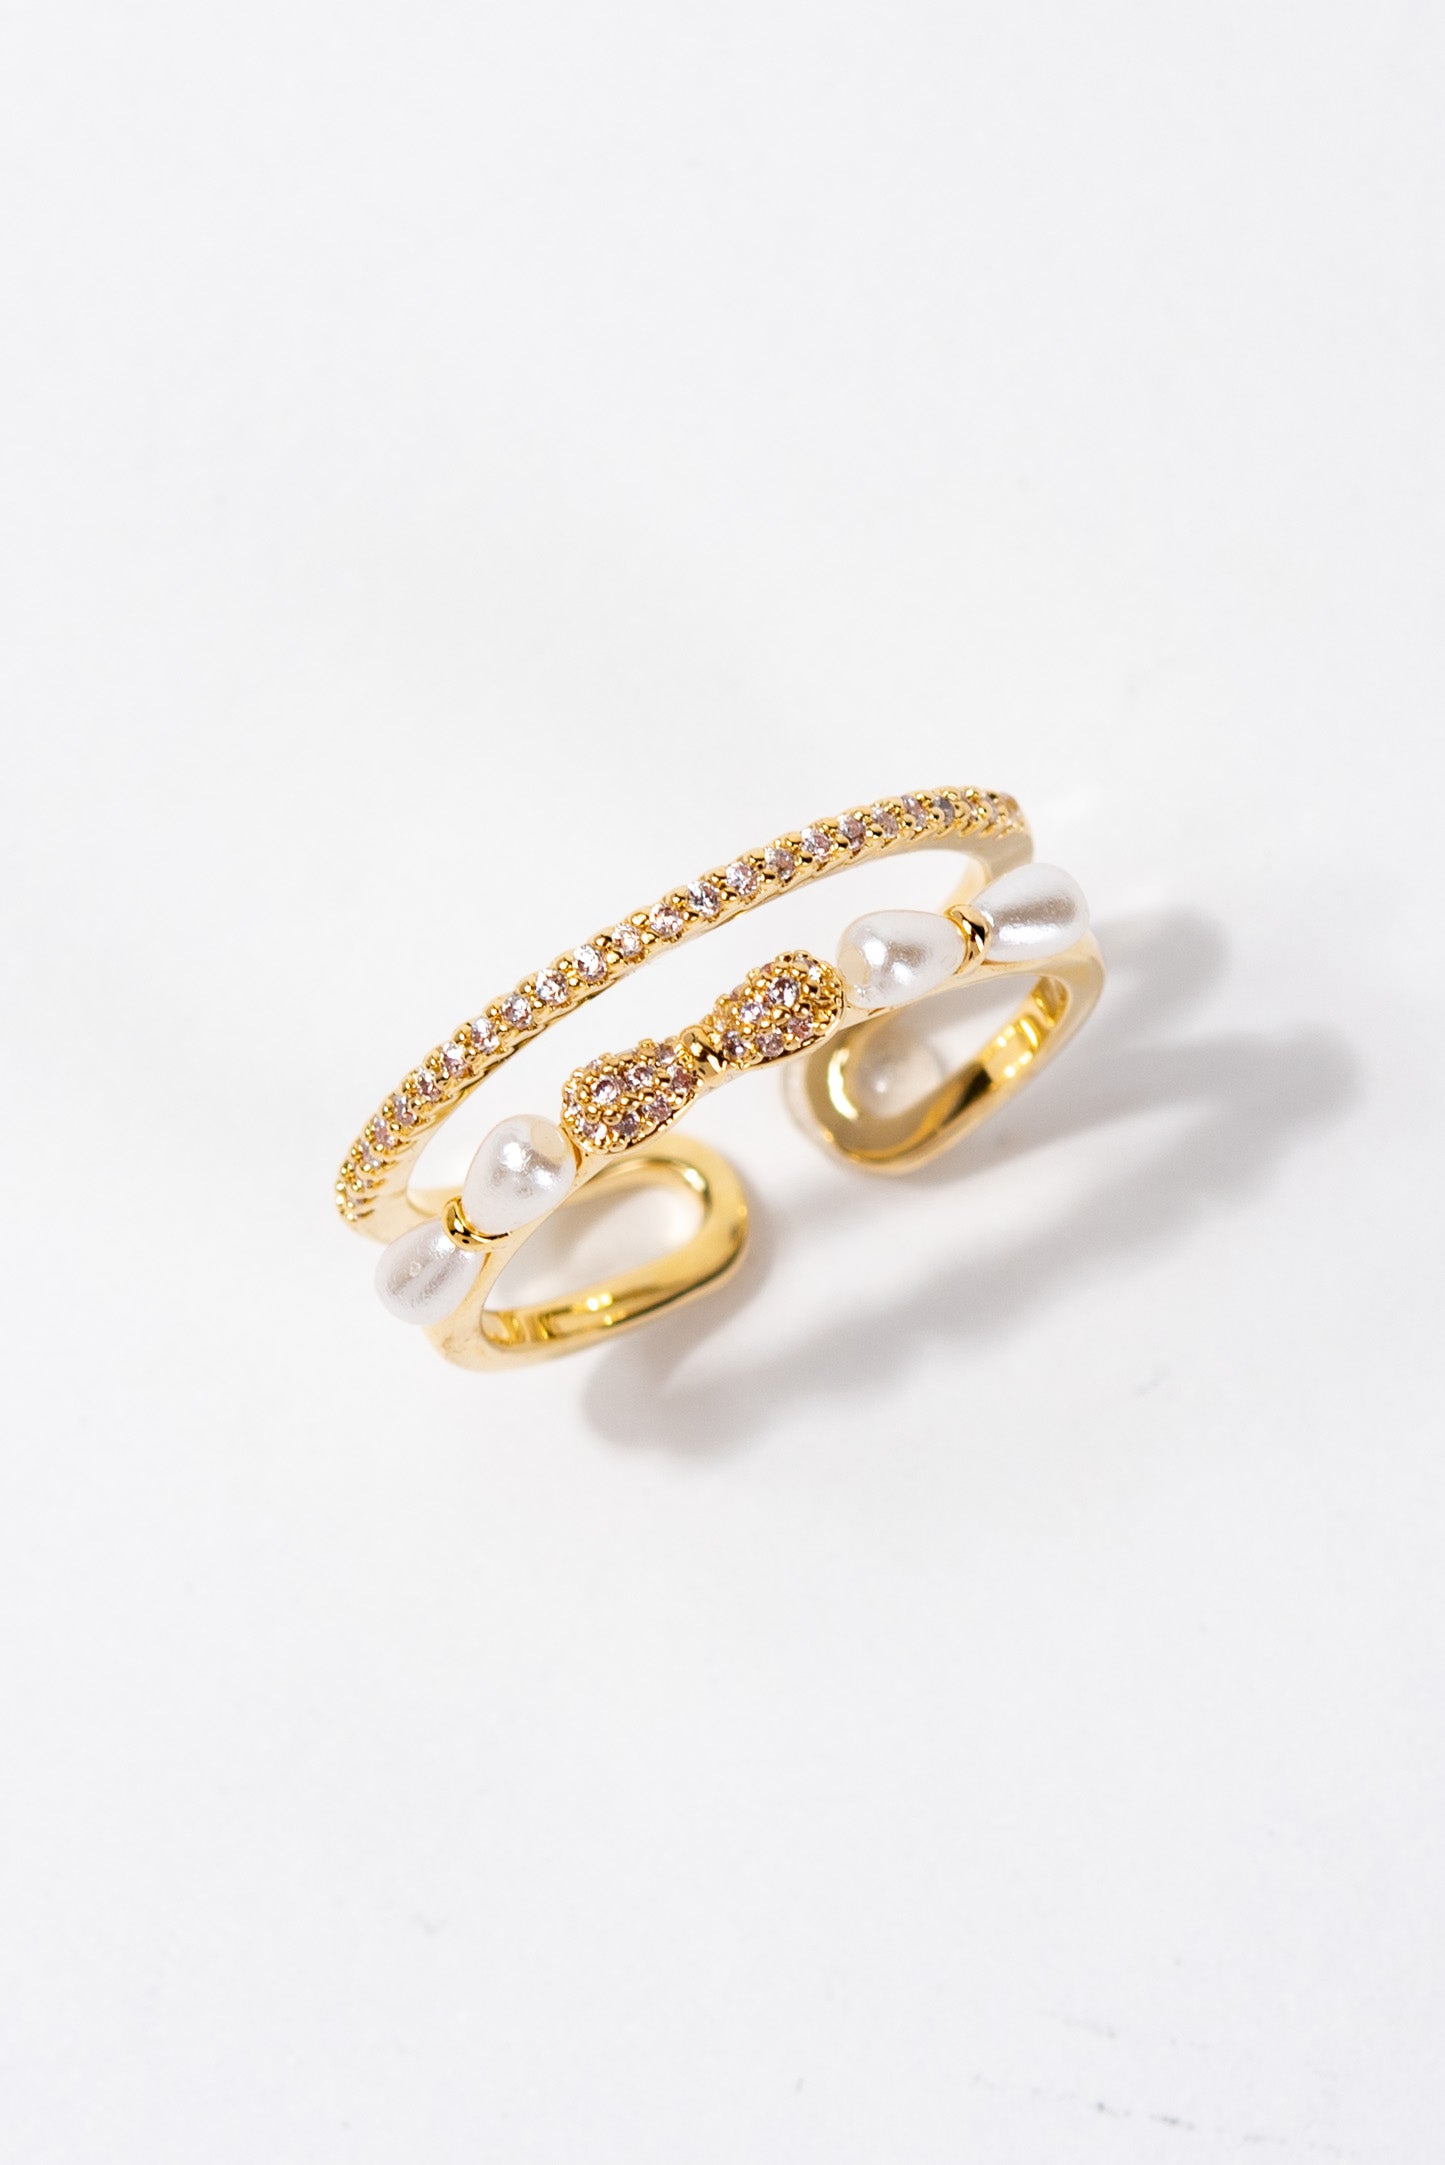 Isabelle Rhinestone Bow Adjustable Ring